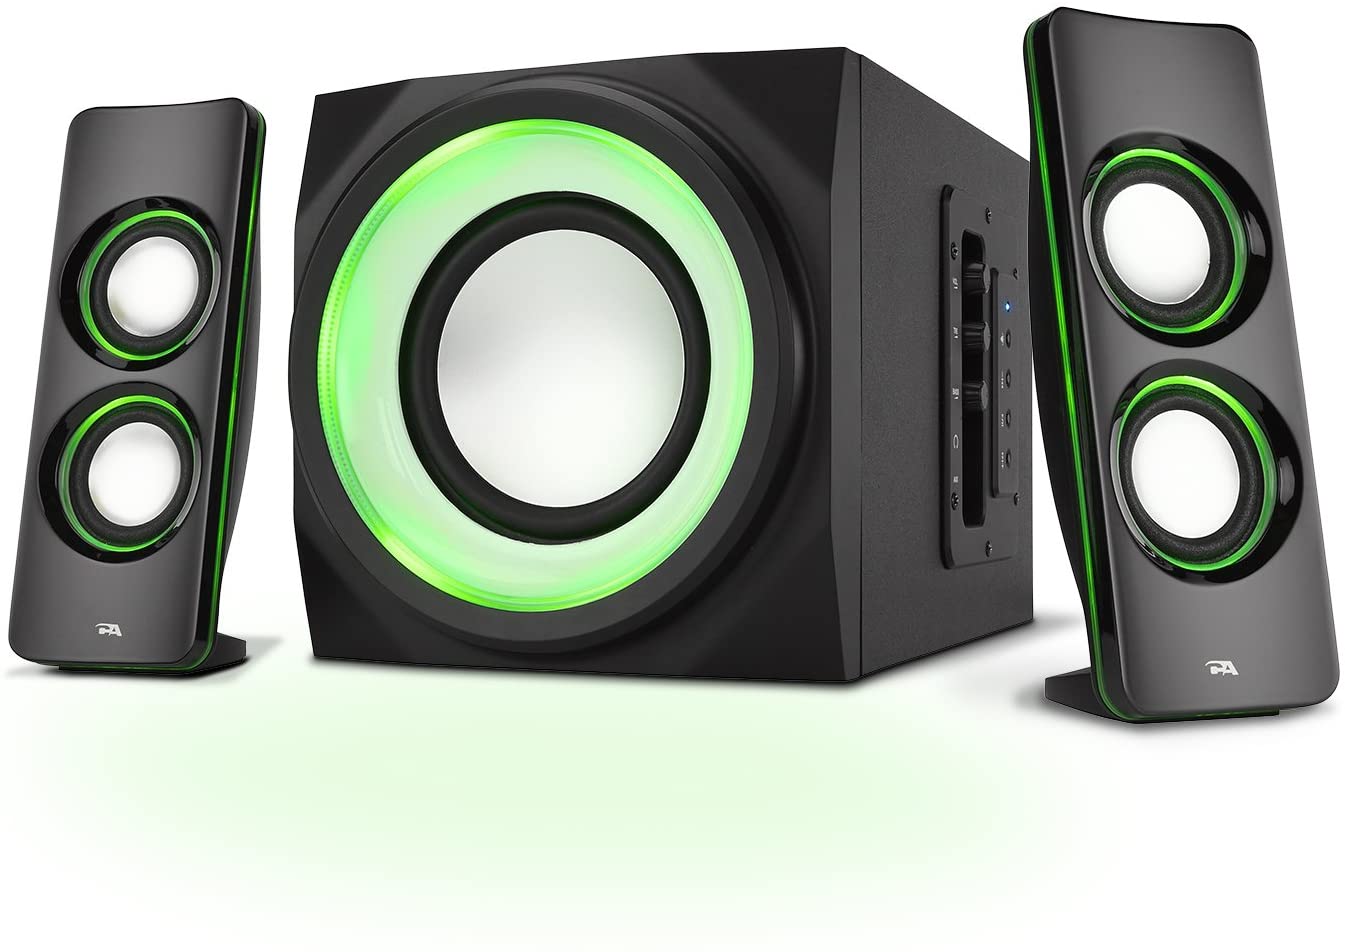 best speakers for living room